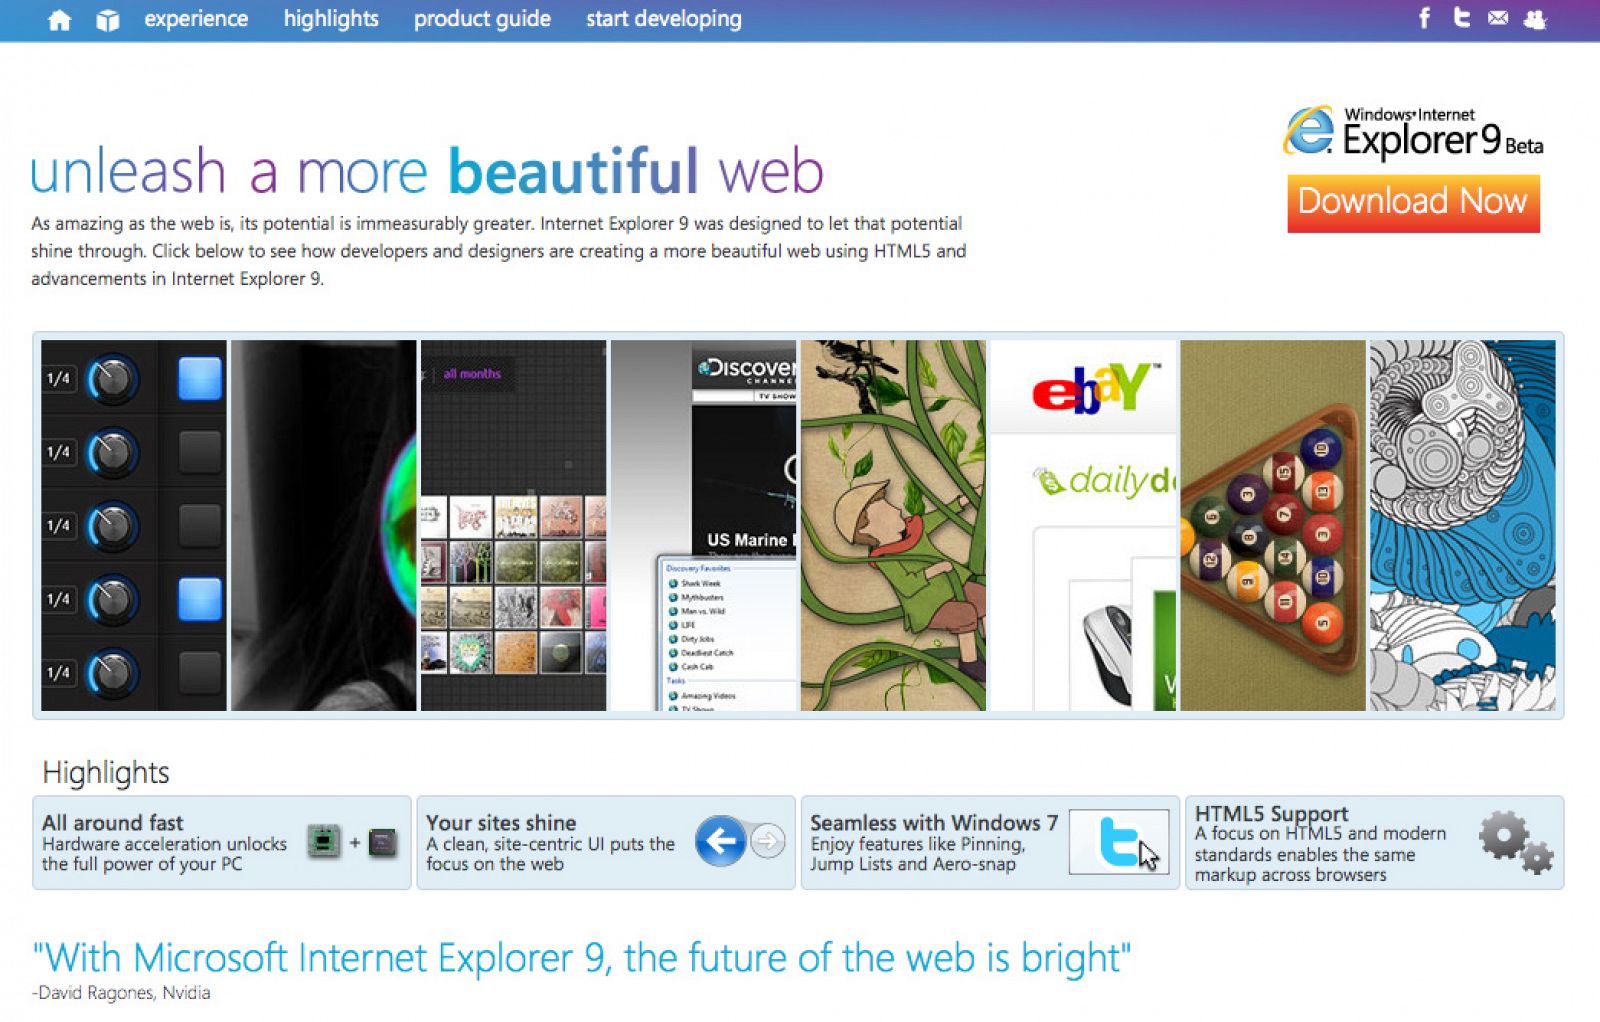 La web dedicada al lanzamiento de Internet Explorer 9